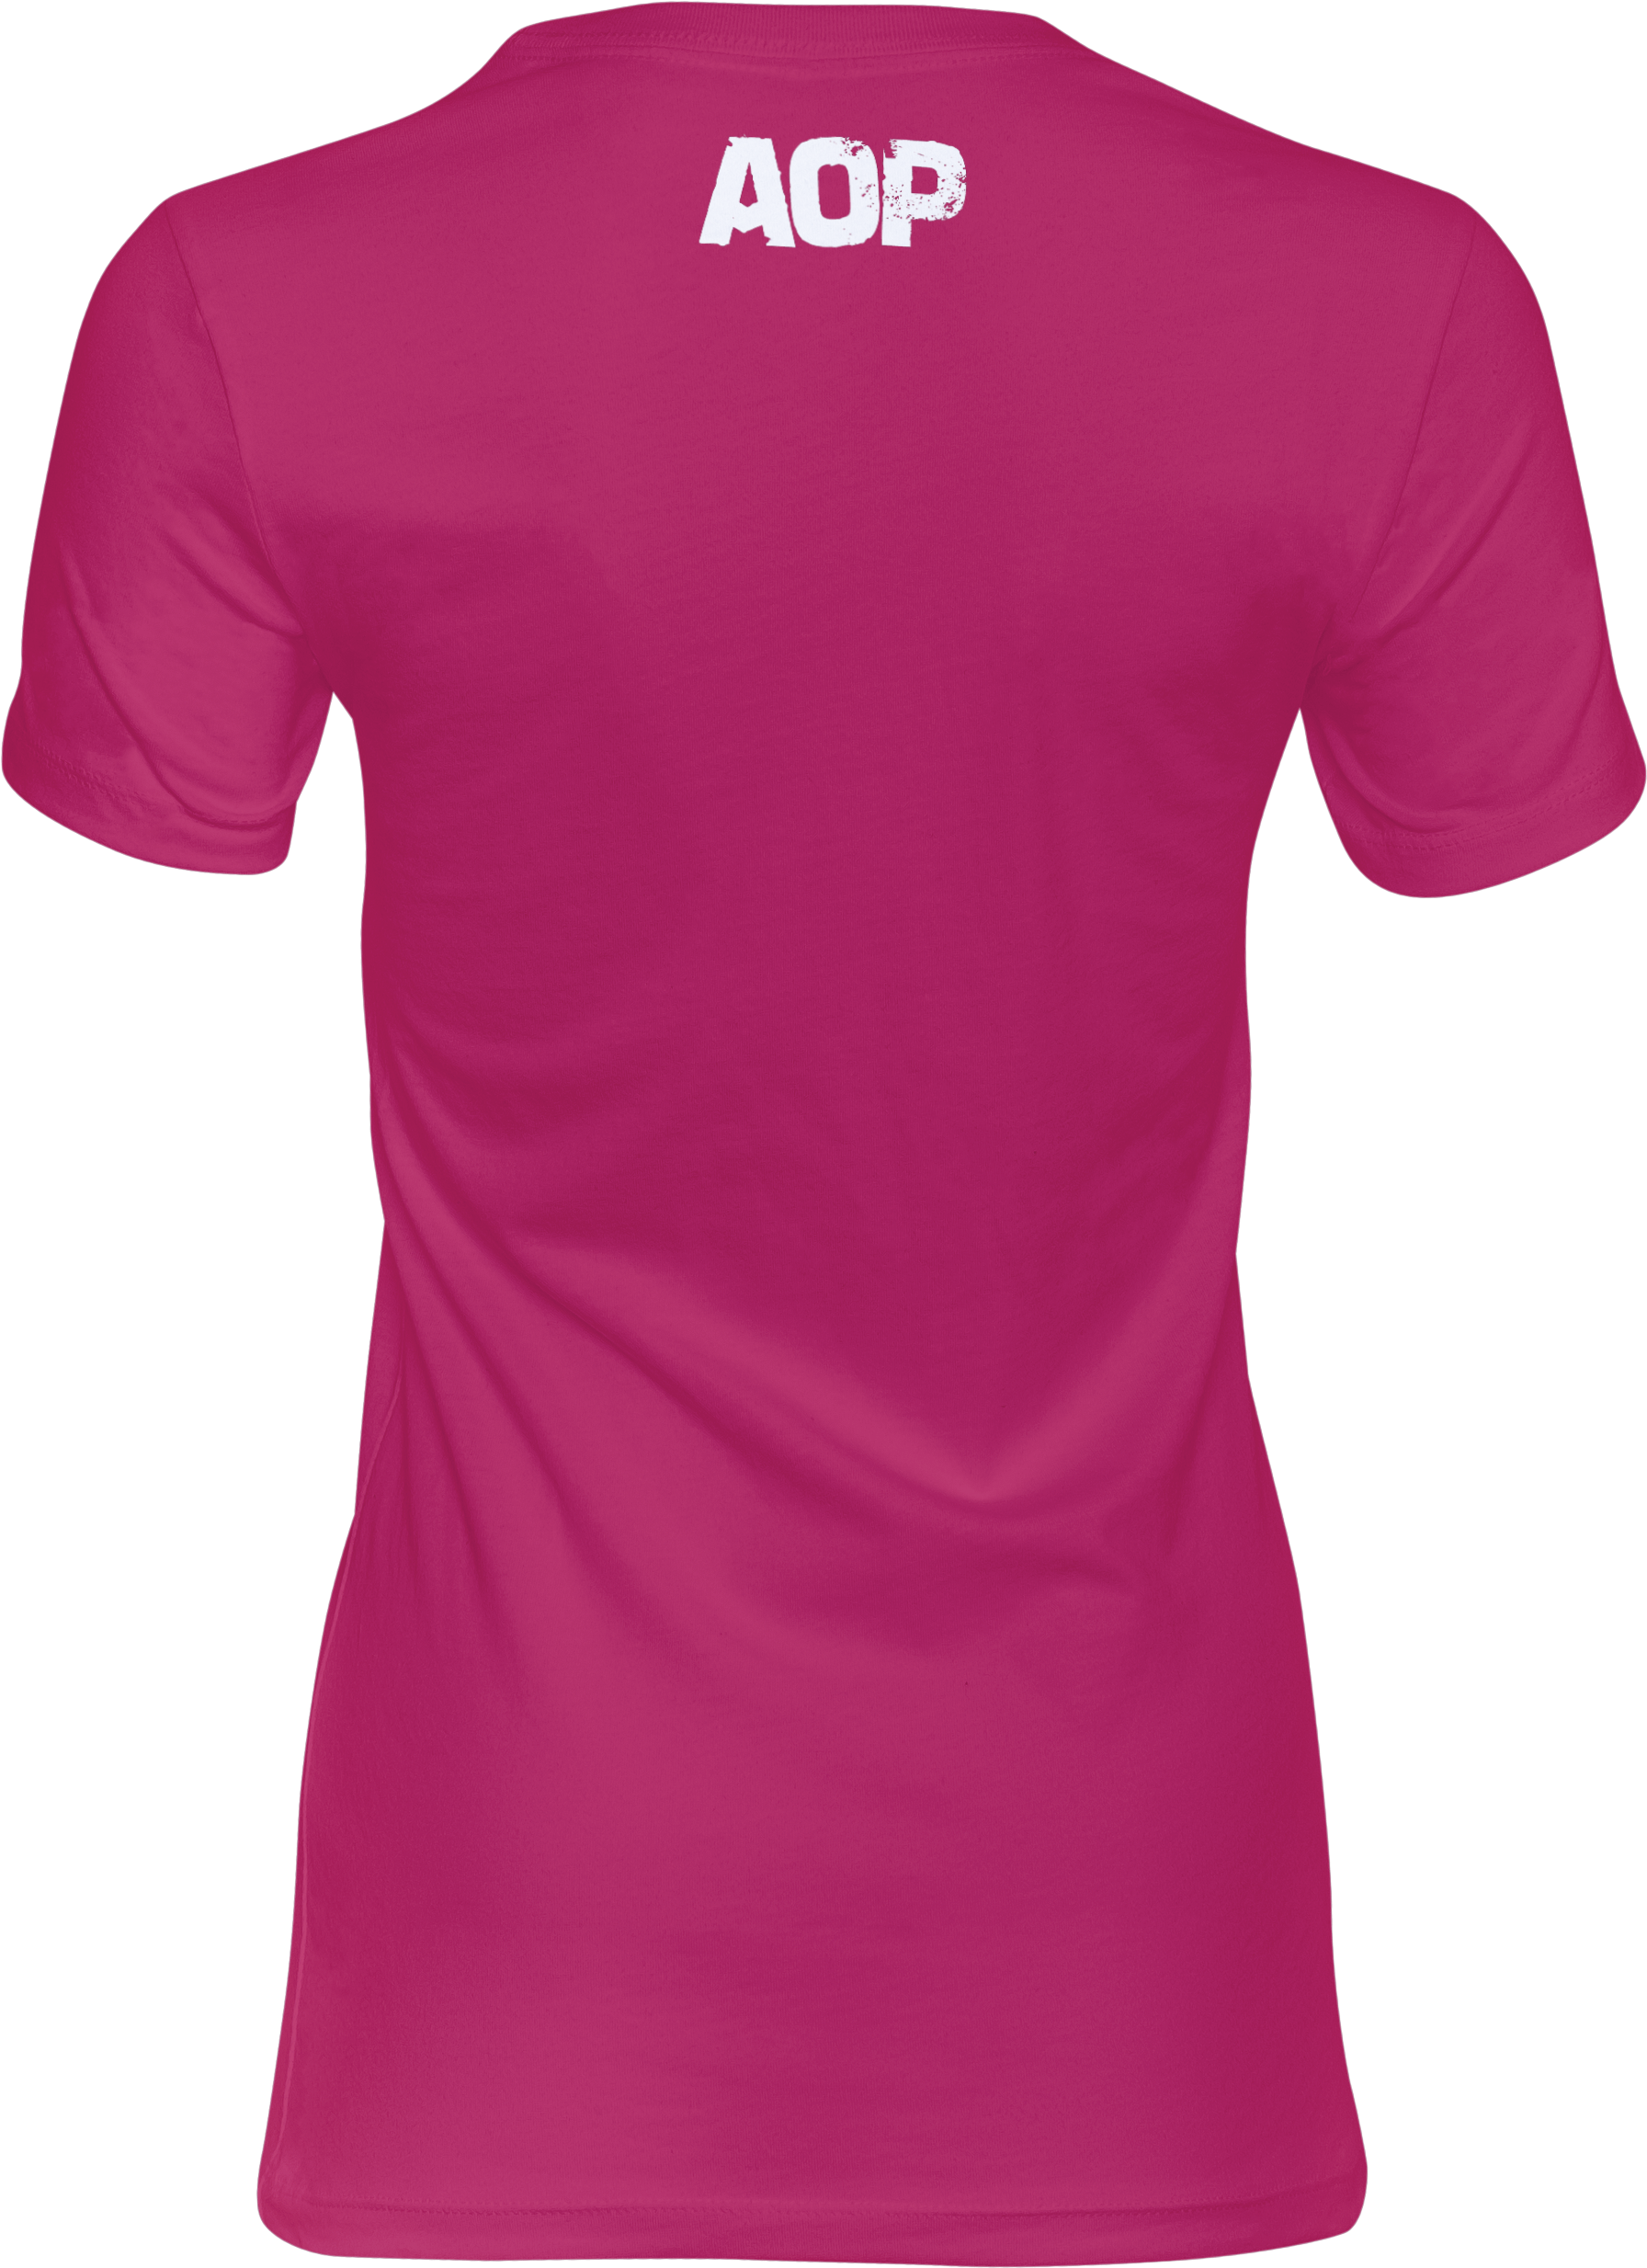 AOP – Unsere Lieder – Girlie-Shirt (pink)